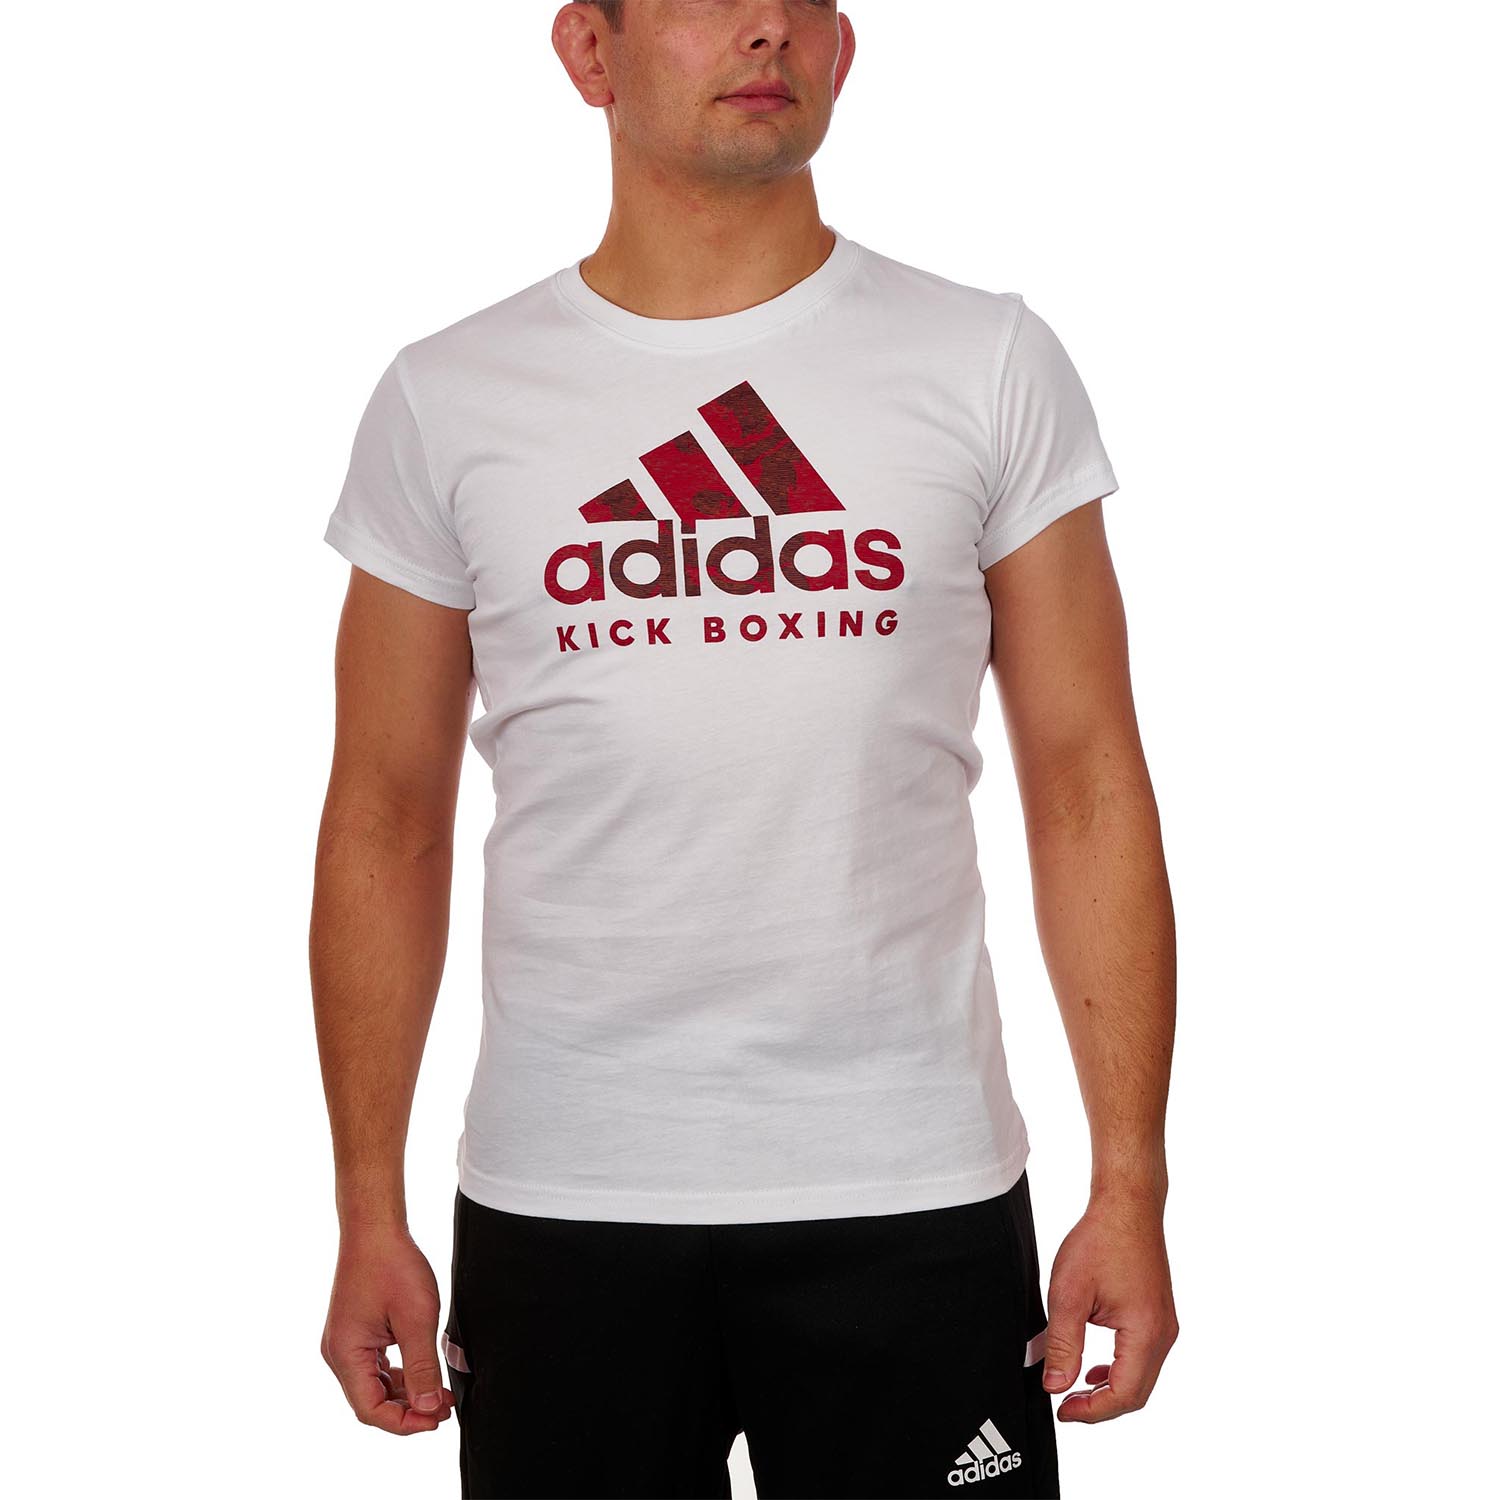 adidas T-Shirt, Badge Of Sport, Kickboxing, weiß, L